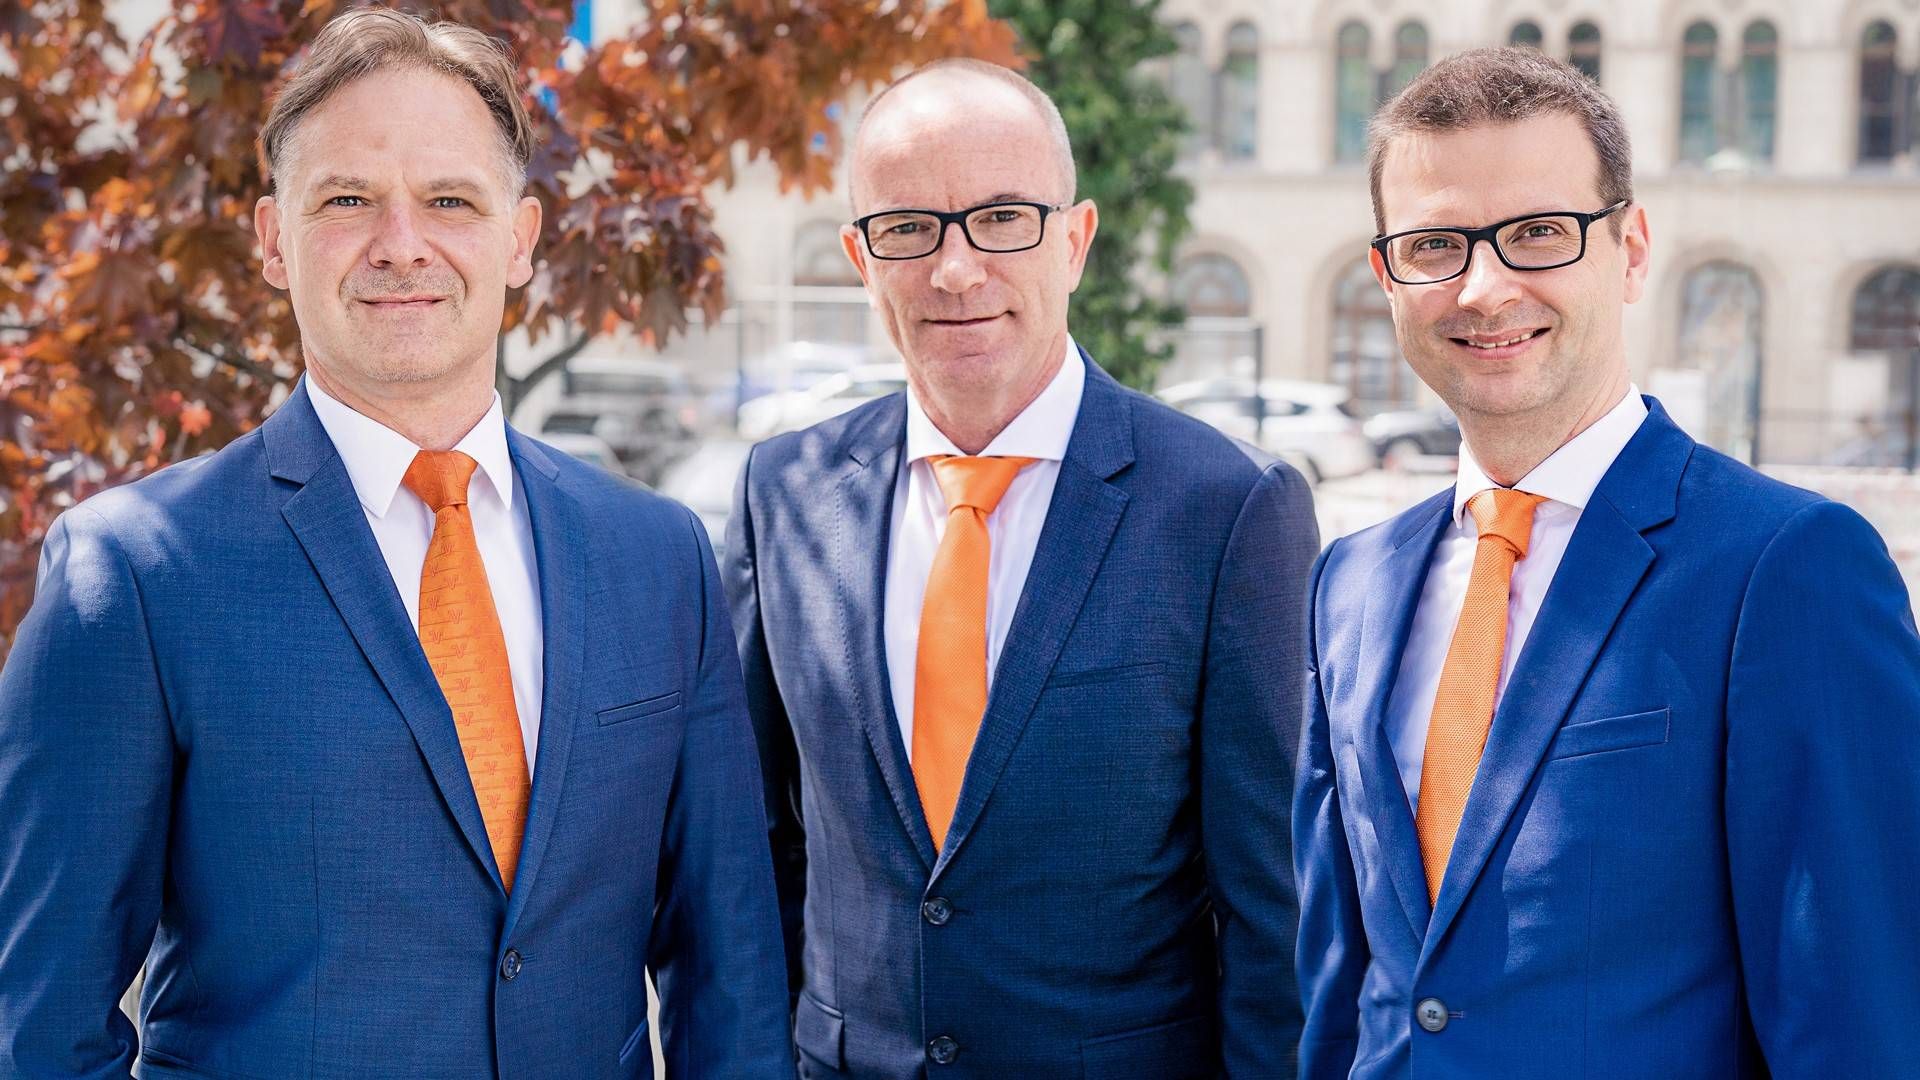 Vorstand der Volksbank Halle v.l.n.r.: Jan Röder, Thomas Kaul, Sascha Gläßer | Foto: Volksbank Halle